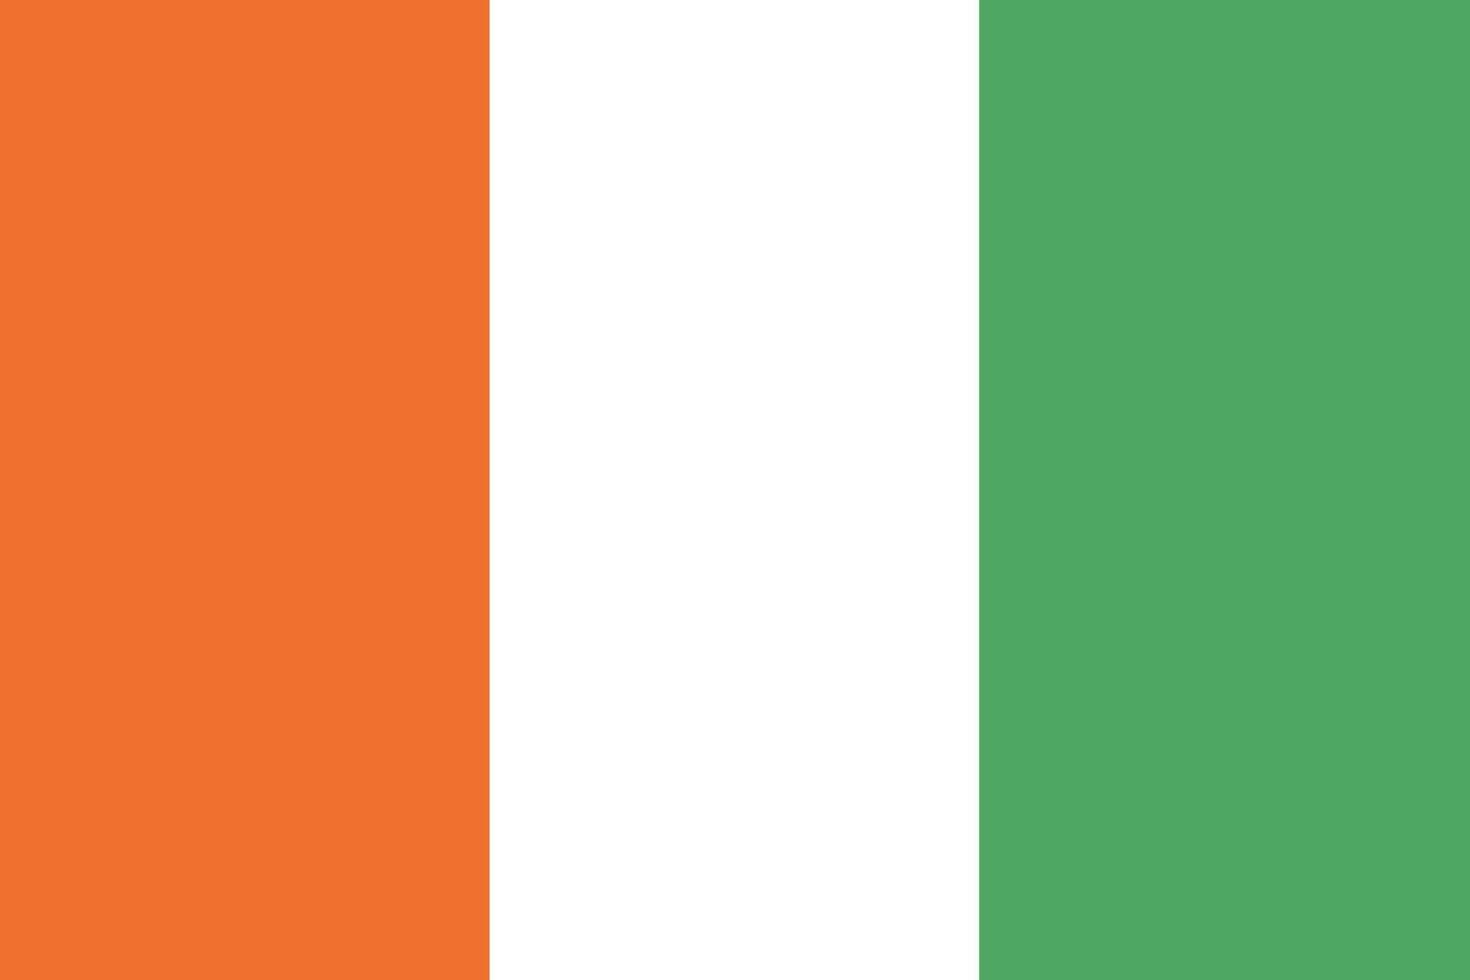 bandeira da costa do marfim. cores e proporções oficiais. bandeira nacional da costa do marfim. vetor